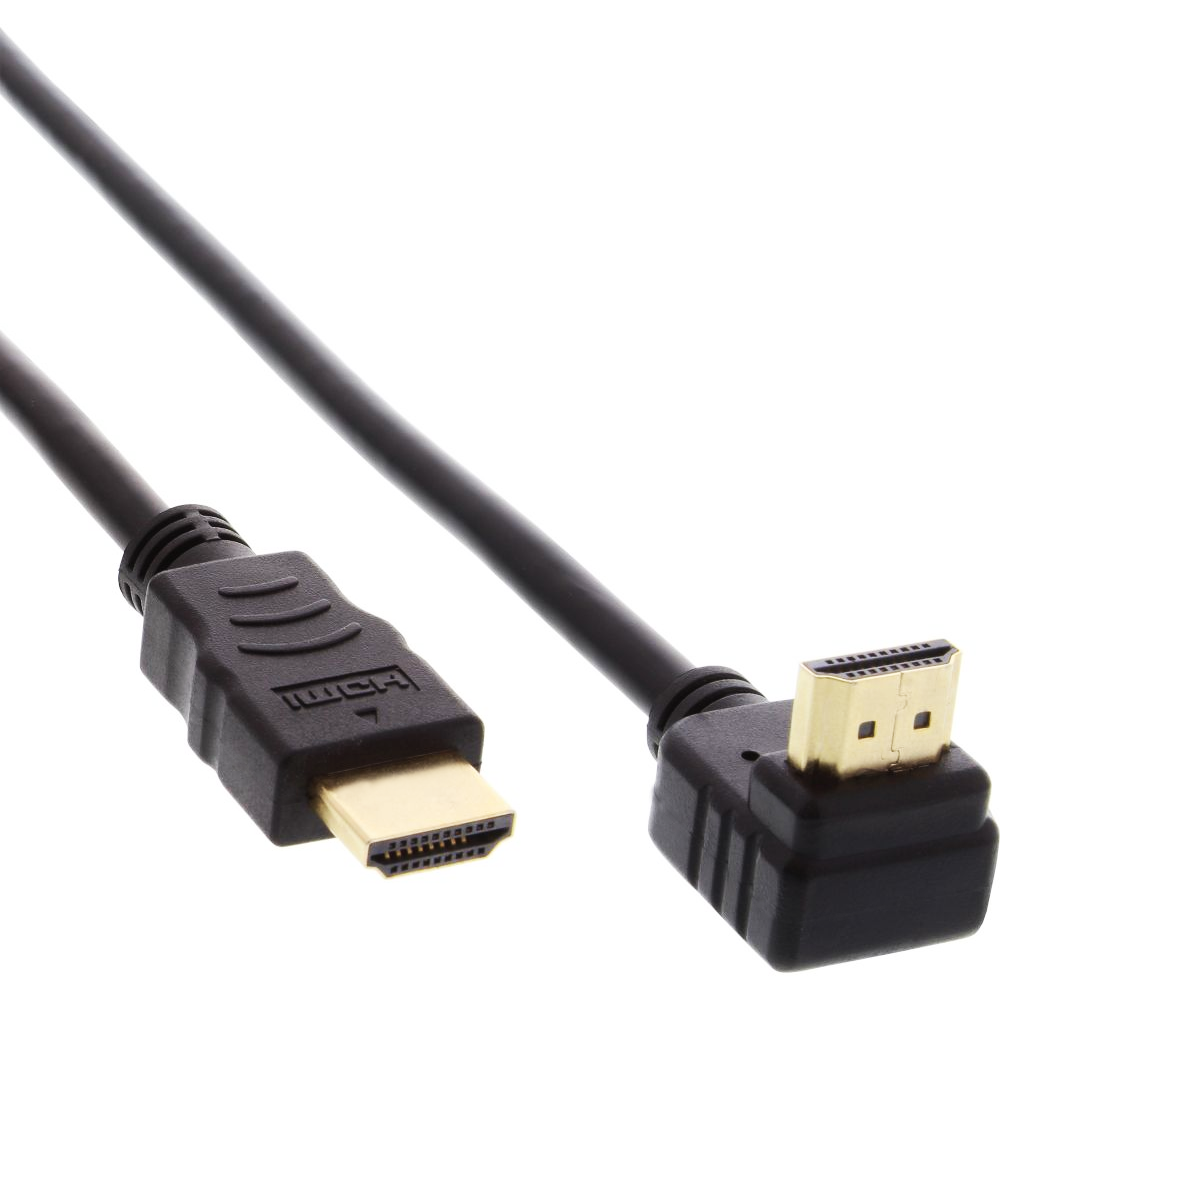 HDMI-Kabel einseitig mit 90° Winkelstecker, 4K, 30cm